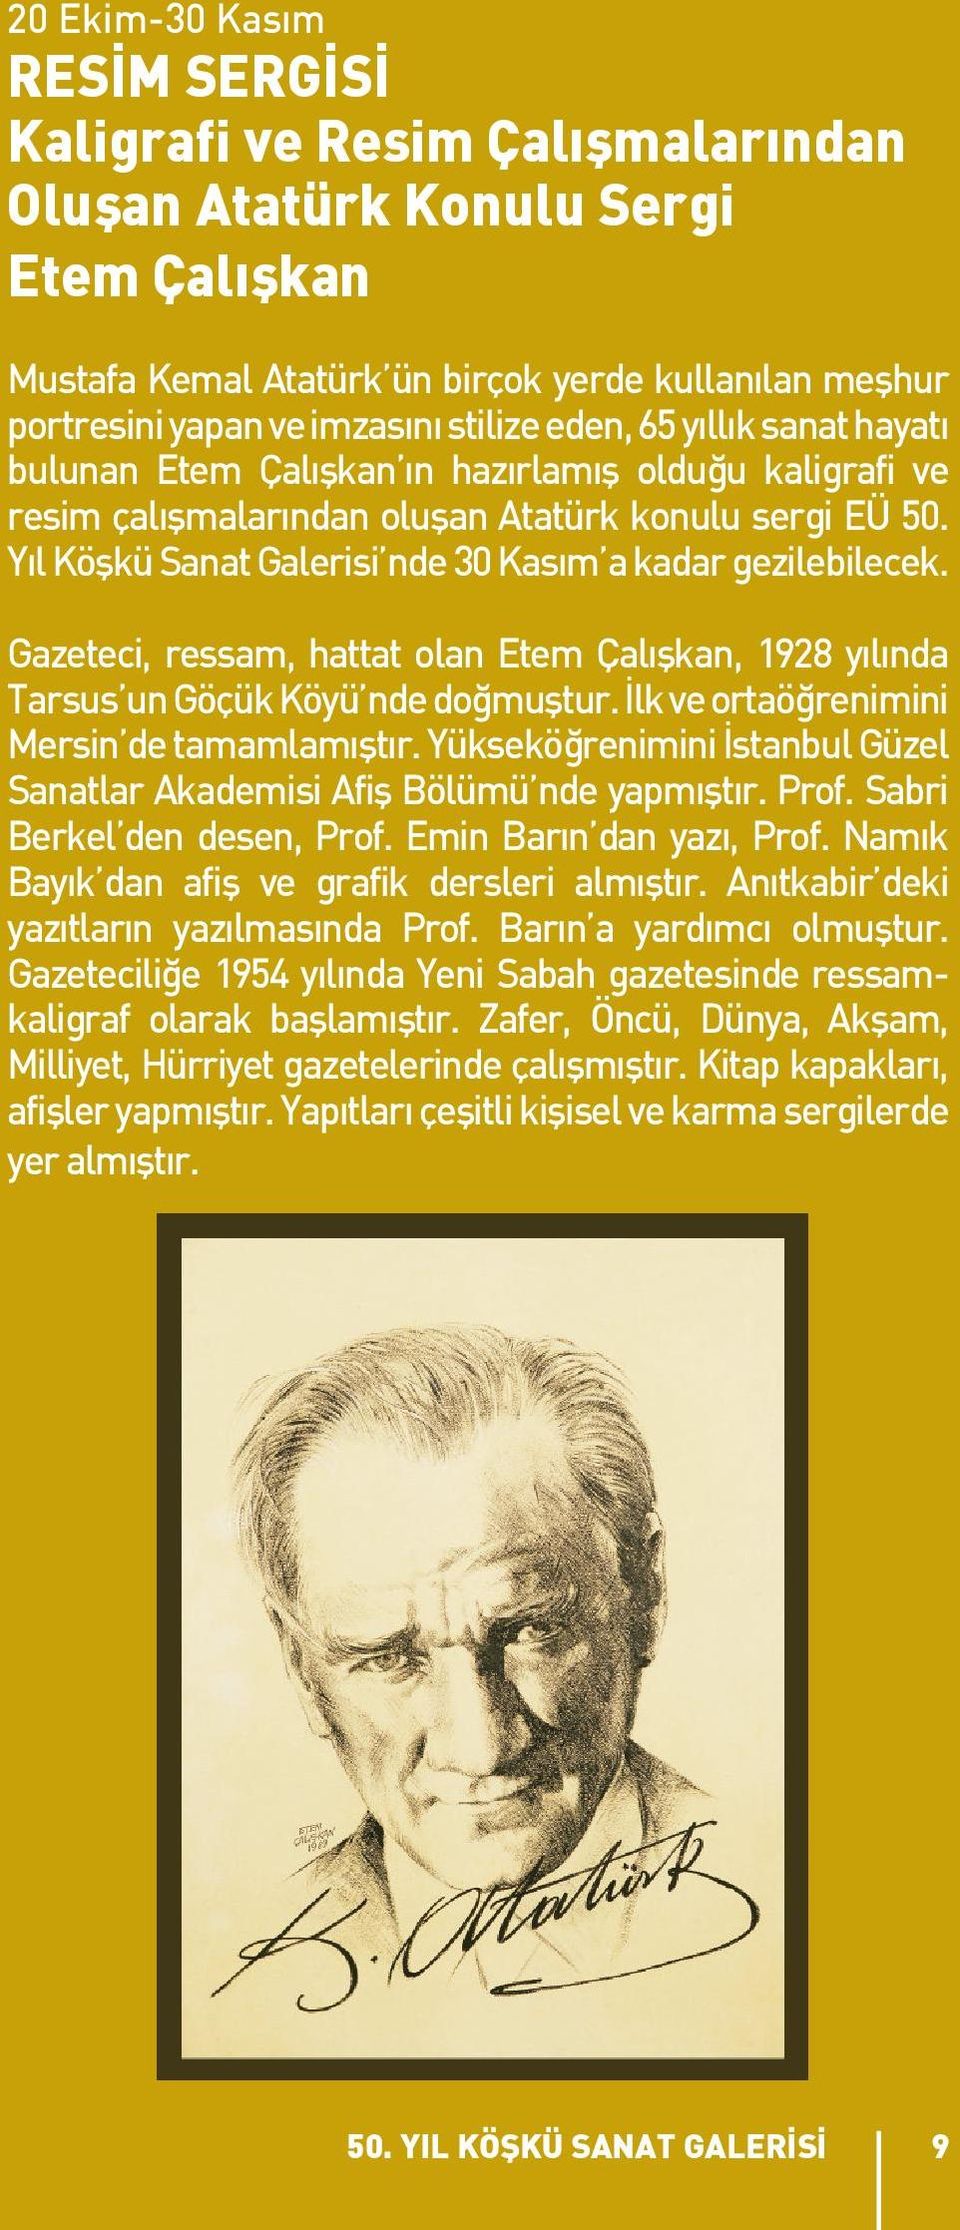 Yıl Köşkü Sanat Galerisi nde 30 Kasım a kadar gezilebilecek. Gazeteci, ressam, hattat olan Etem Çalışkan, 1928 yılında Tarsus un Göçük Köyü nde doğmuştur.